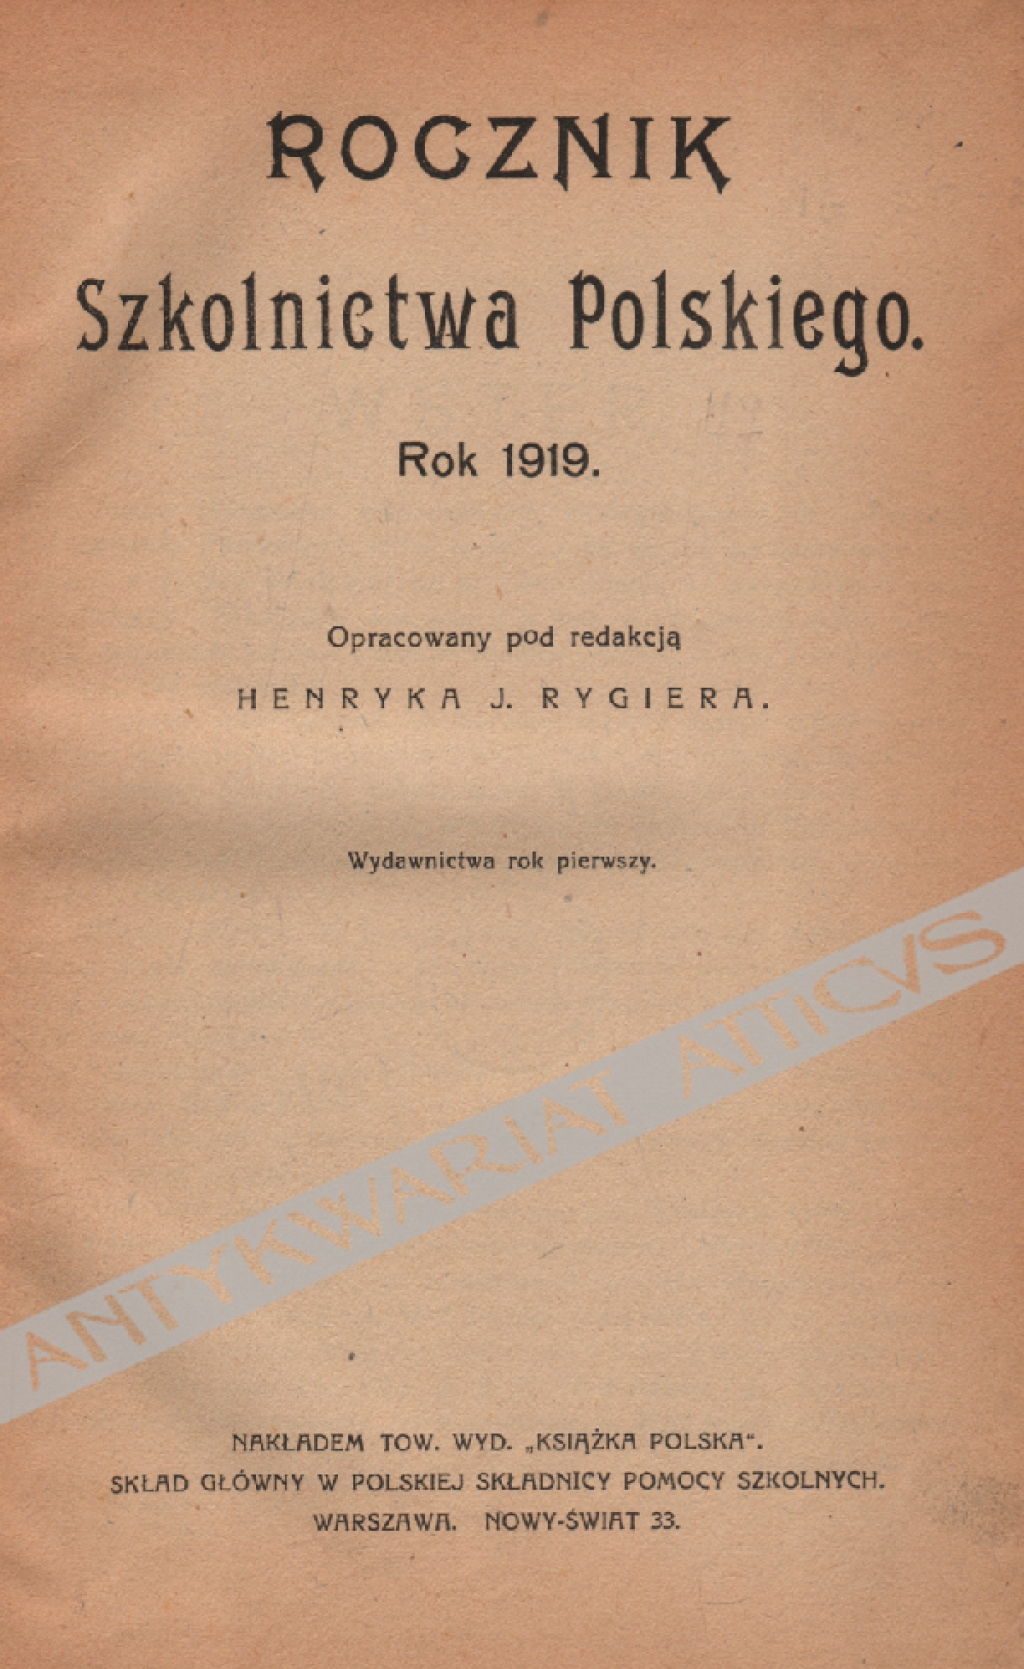 Rocznik Szkolnictwa Polskiego. Rok 1919